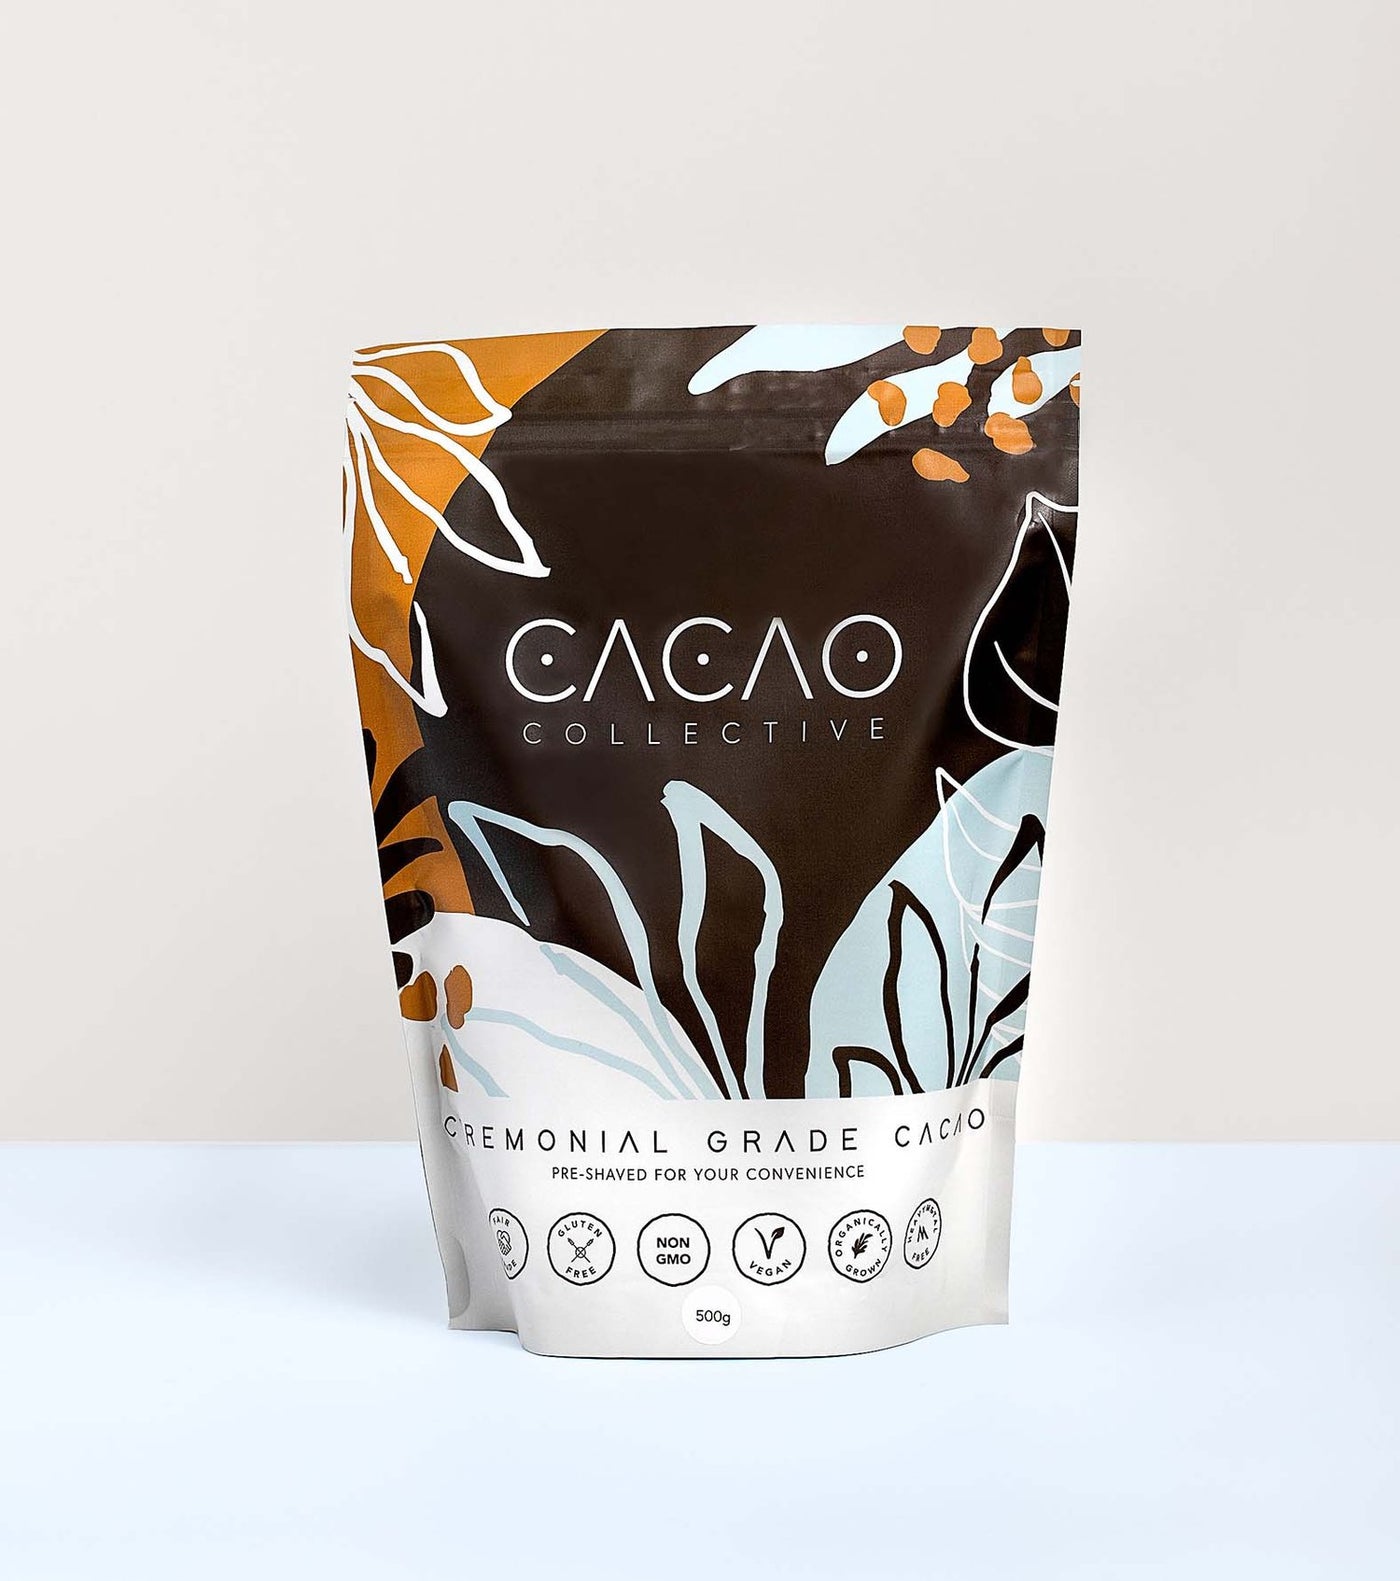 Ceremonial Cacao 500g